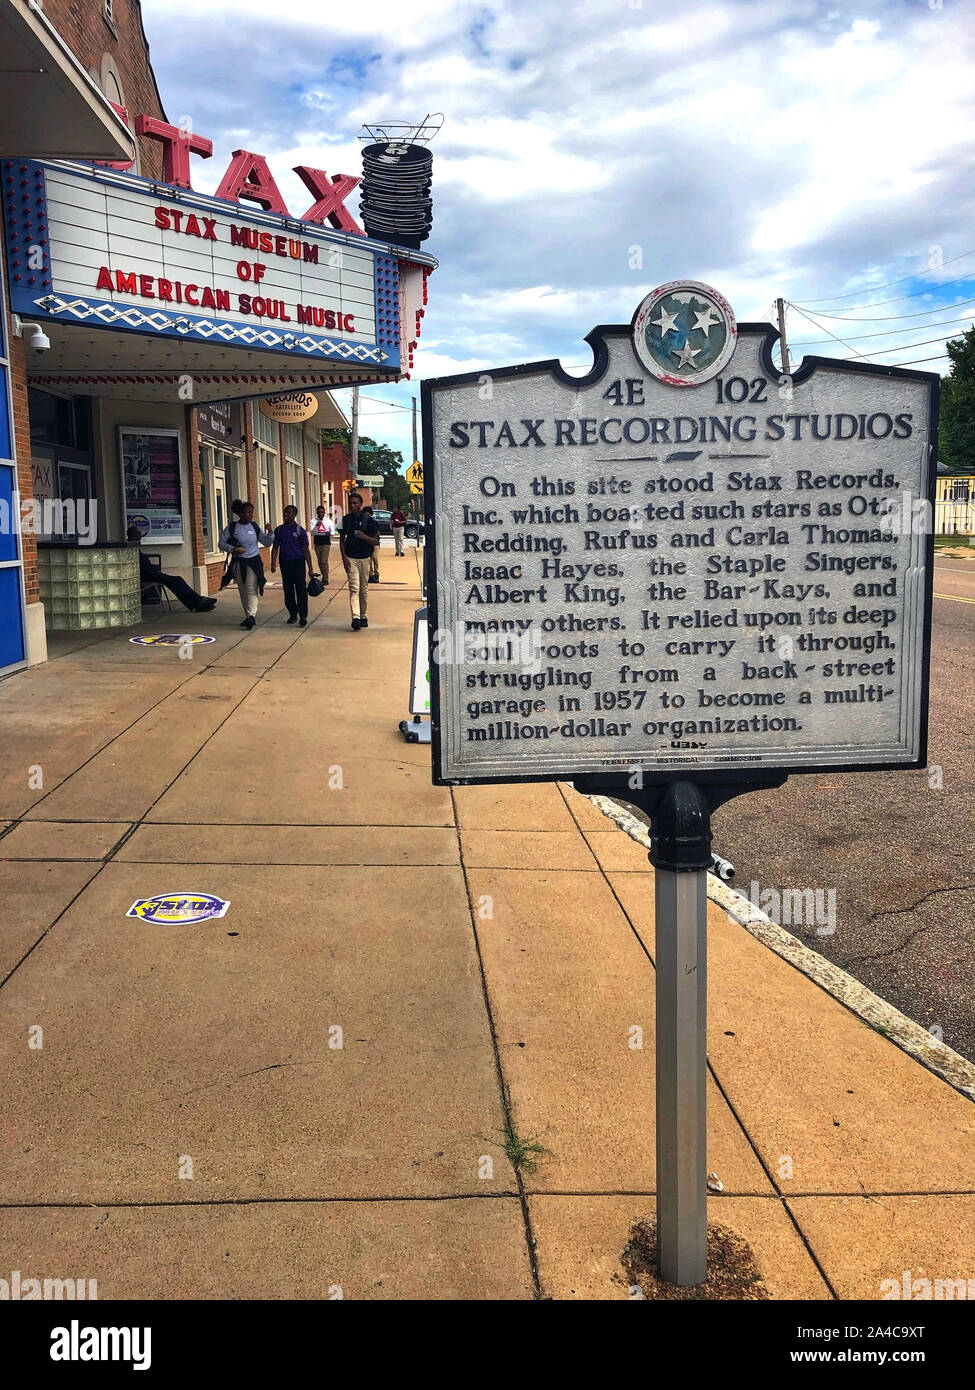 Memphis, TN, USA - 24. September 2019: Das stax Museum der amerikanischen Seele Musik, auf der Website der Stax Recording Studio, wurde im Jahr 2003 eröffnet und Fea gebaut Stockfoto